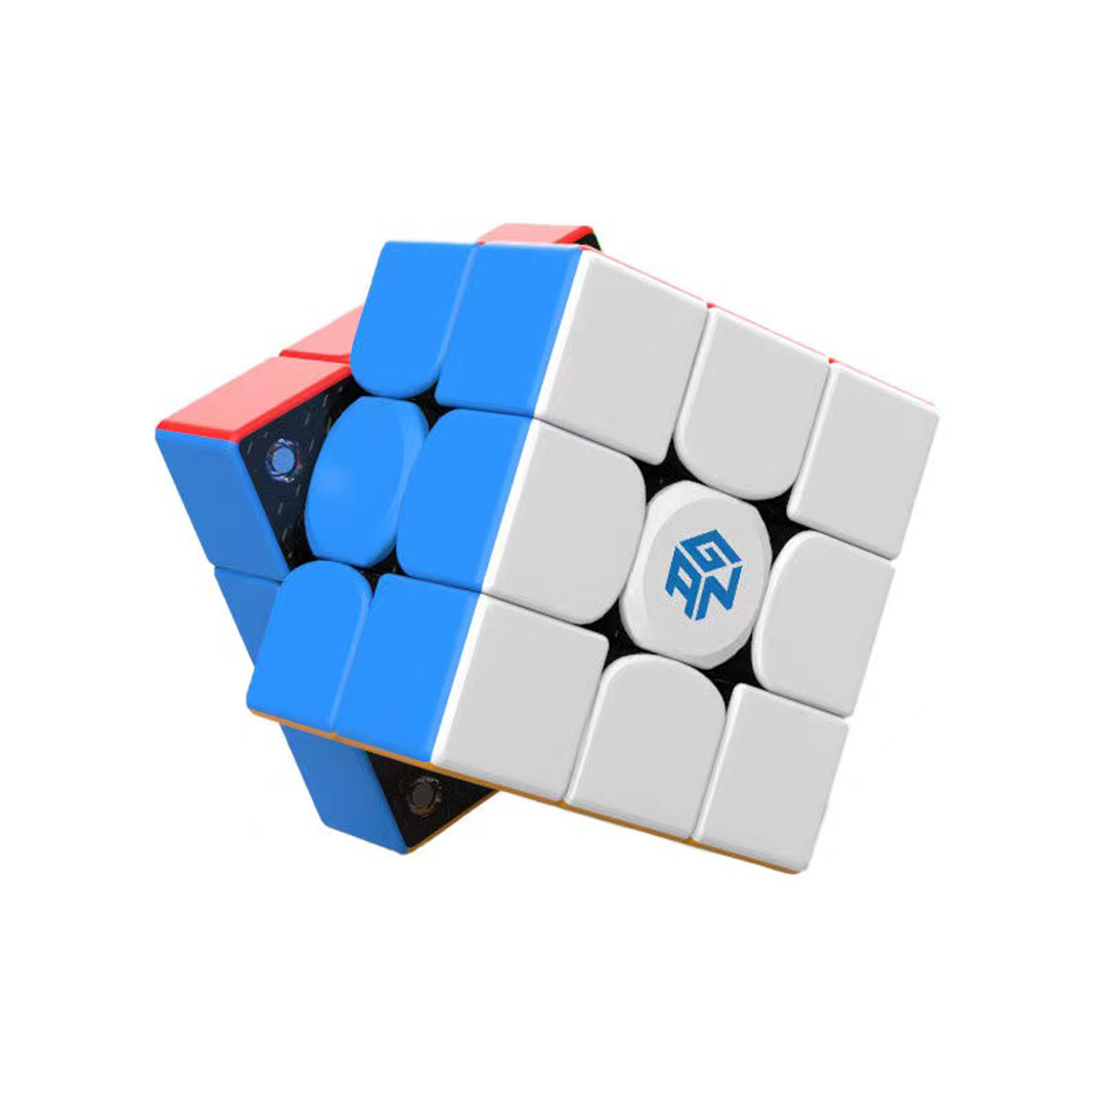 GAN 356 M E 3x3: Le cube qui définit la vitesse et la stabilité 🤩.